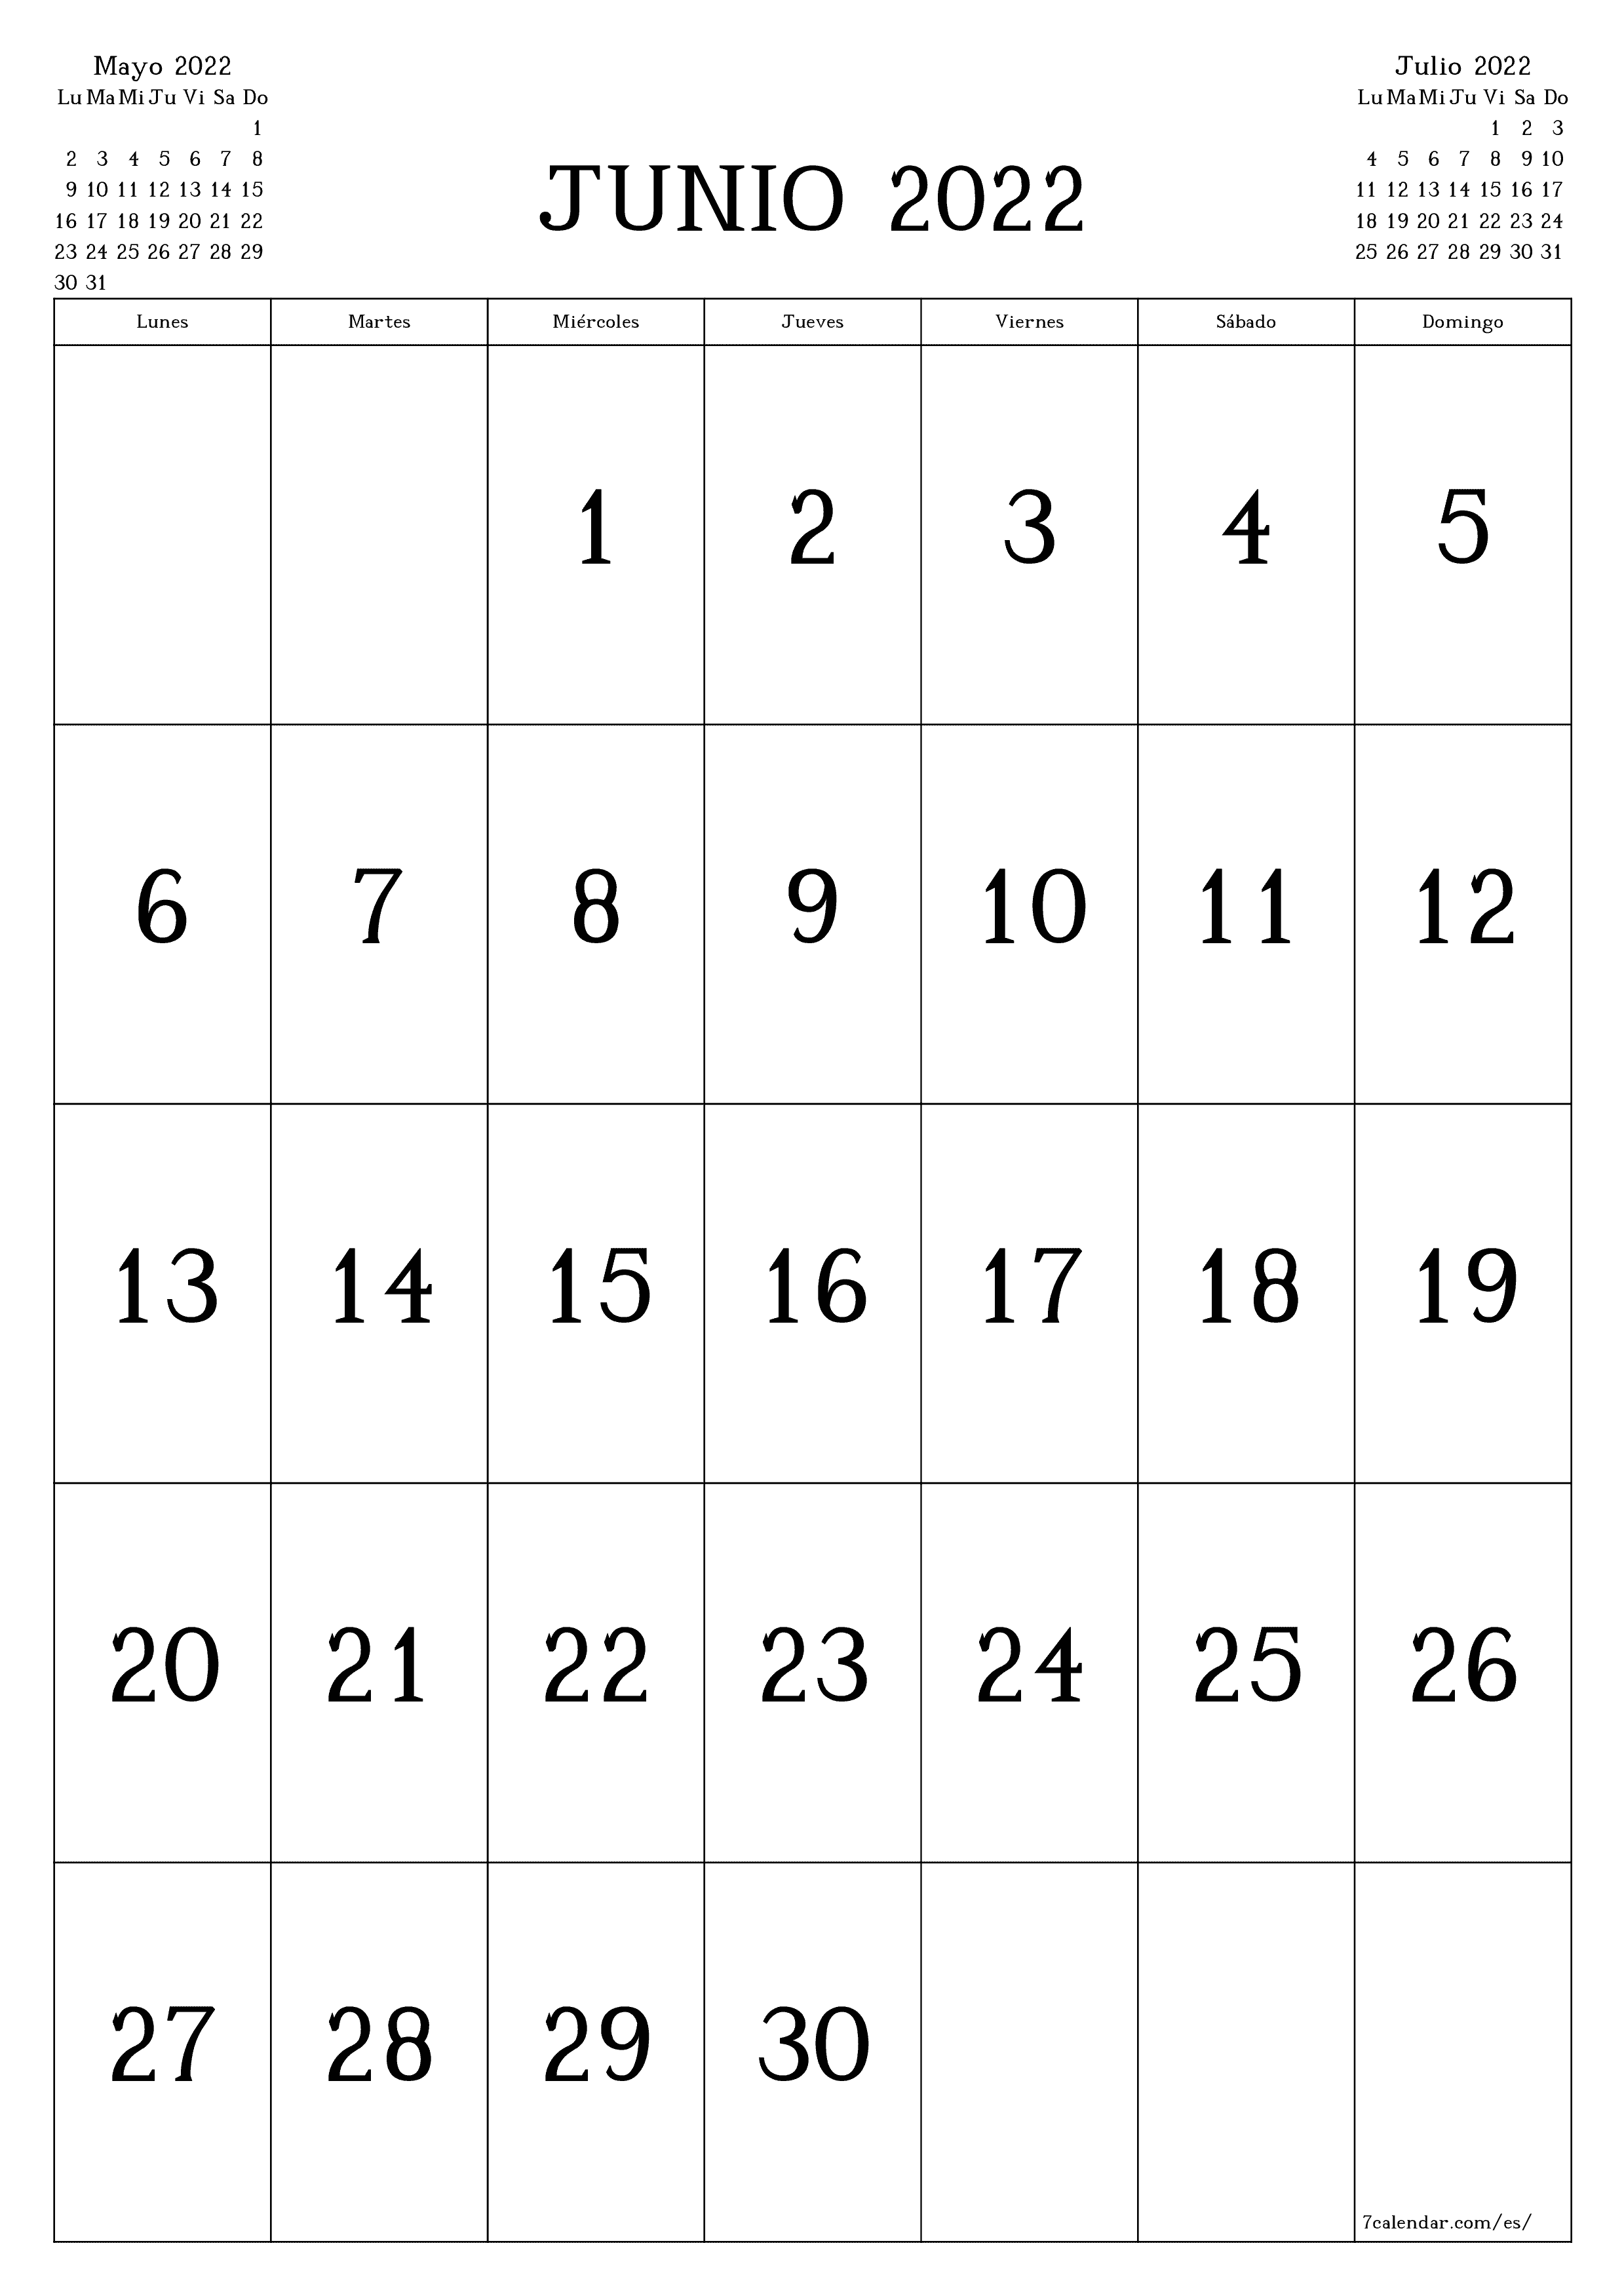 Calendario mensual en blanco para el mes Junio 2022 guardar e imprimir en PDF PNG Spanish - 7calendar.com